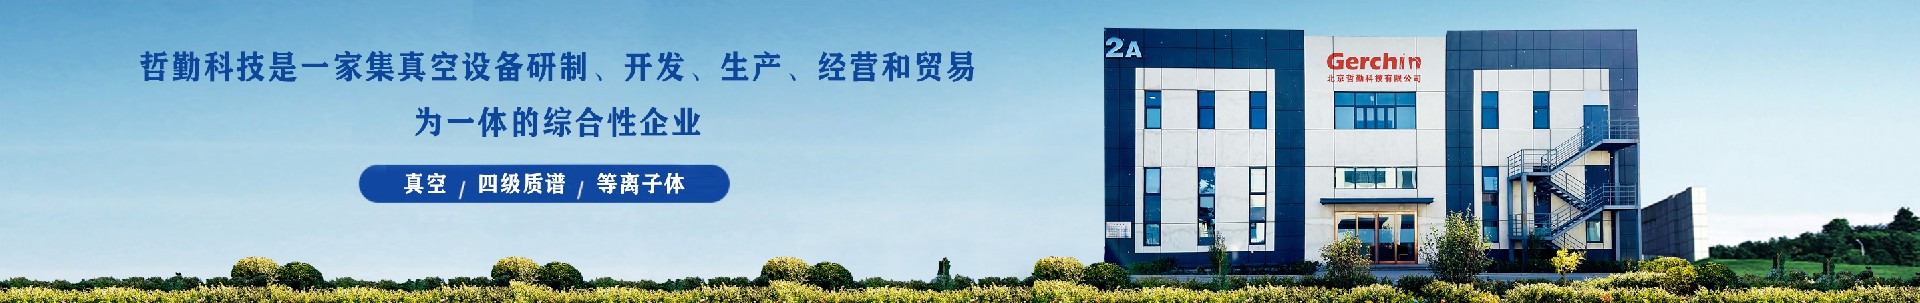 公司简介-北京哲勤科技有限公司